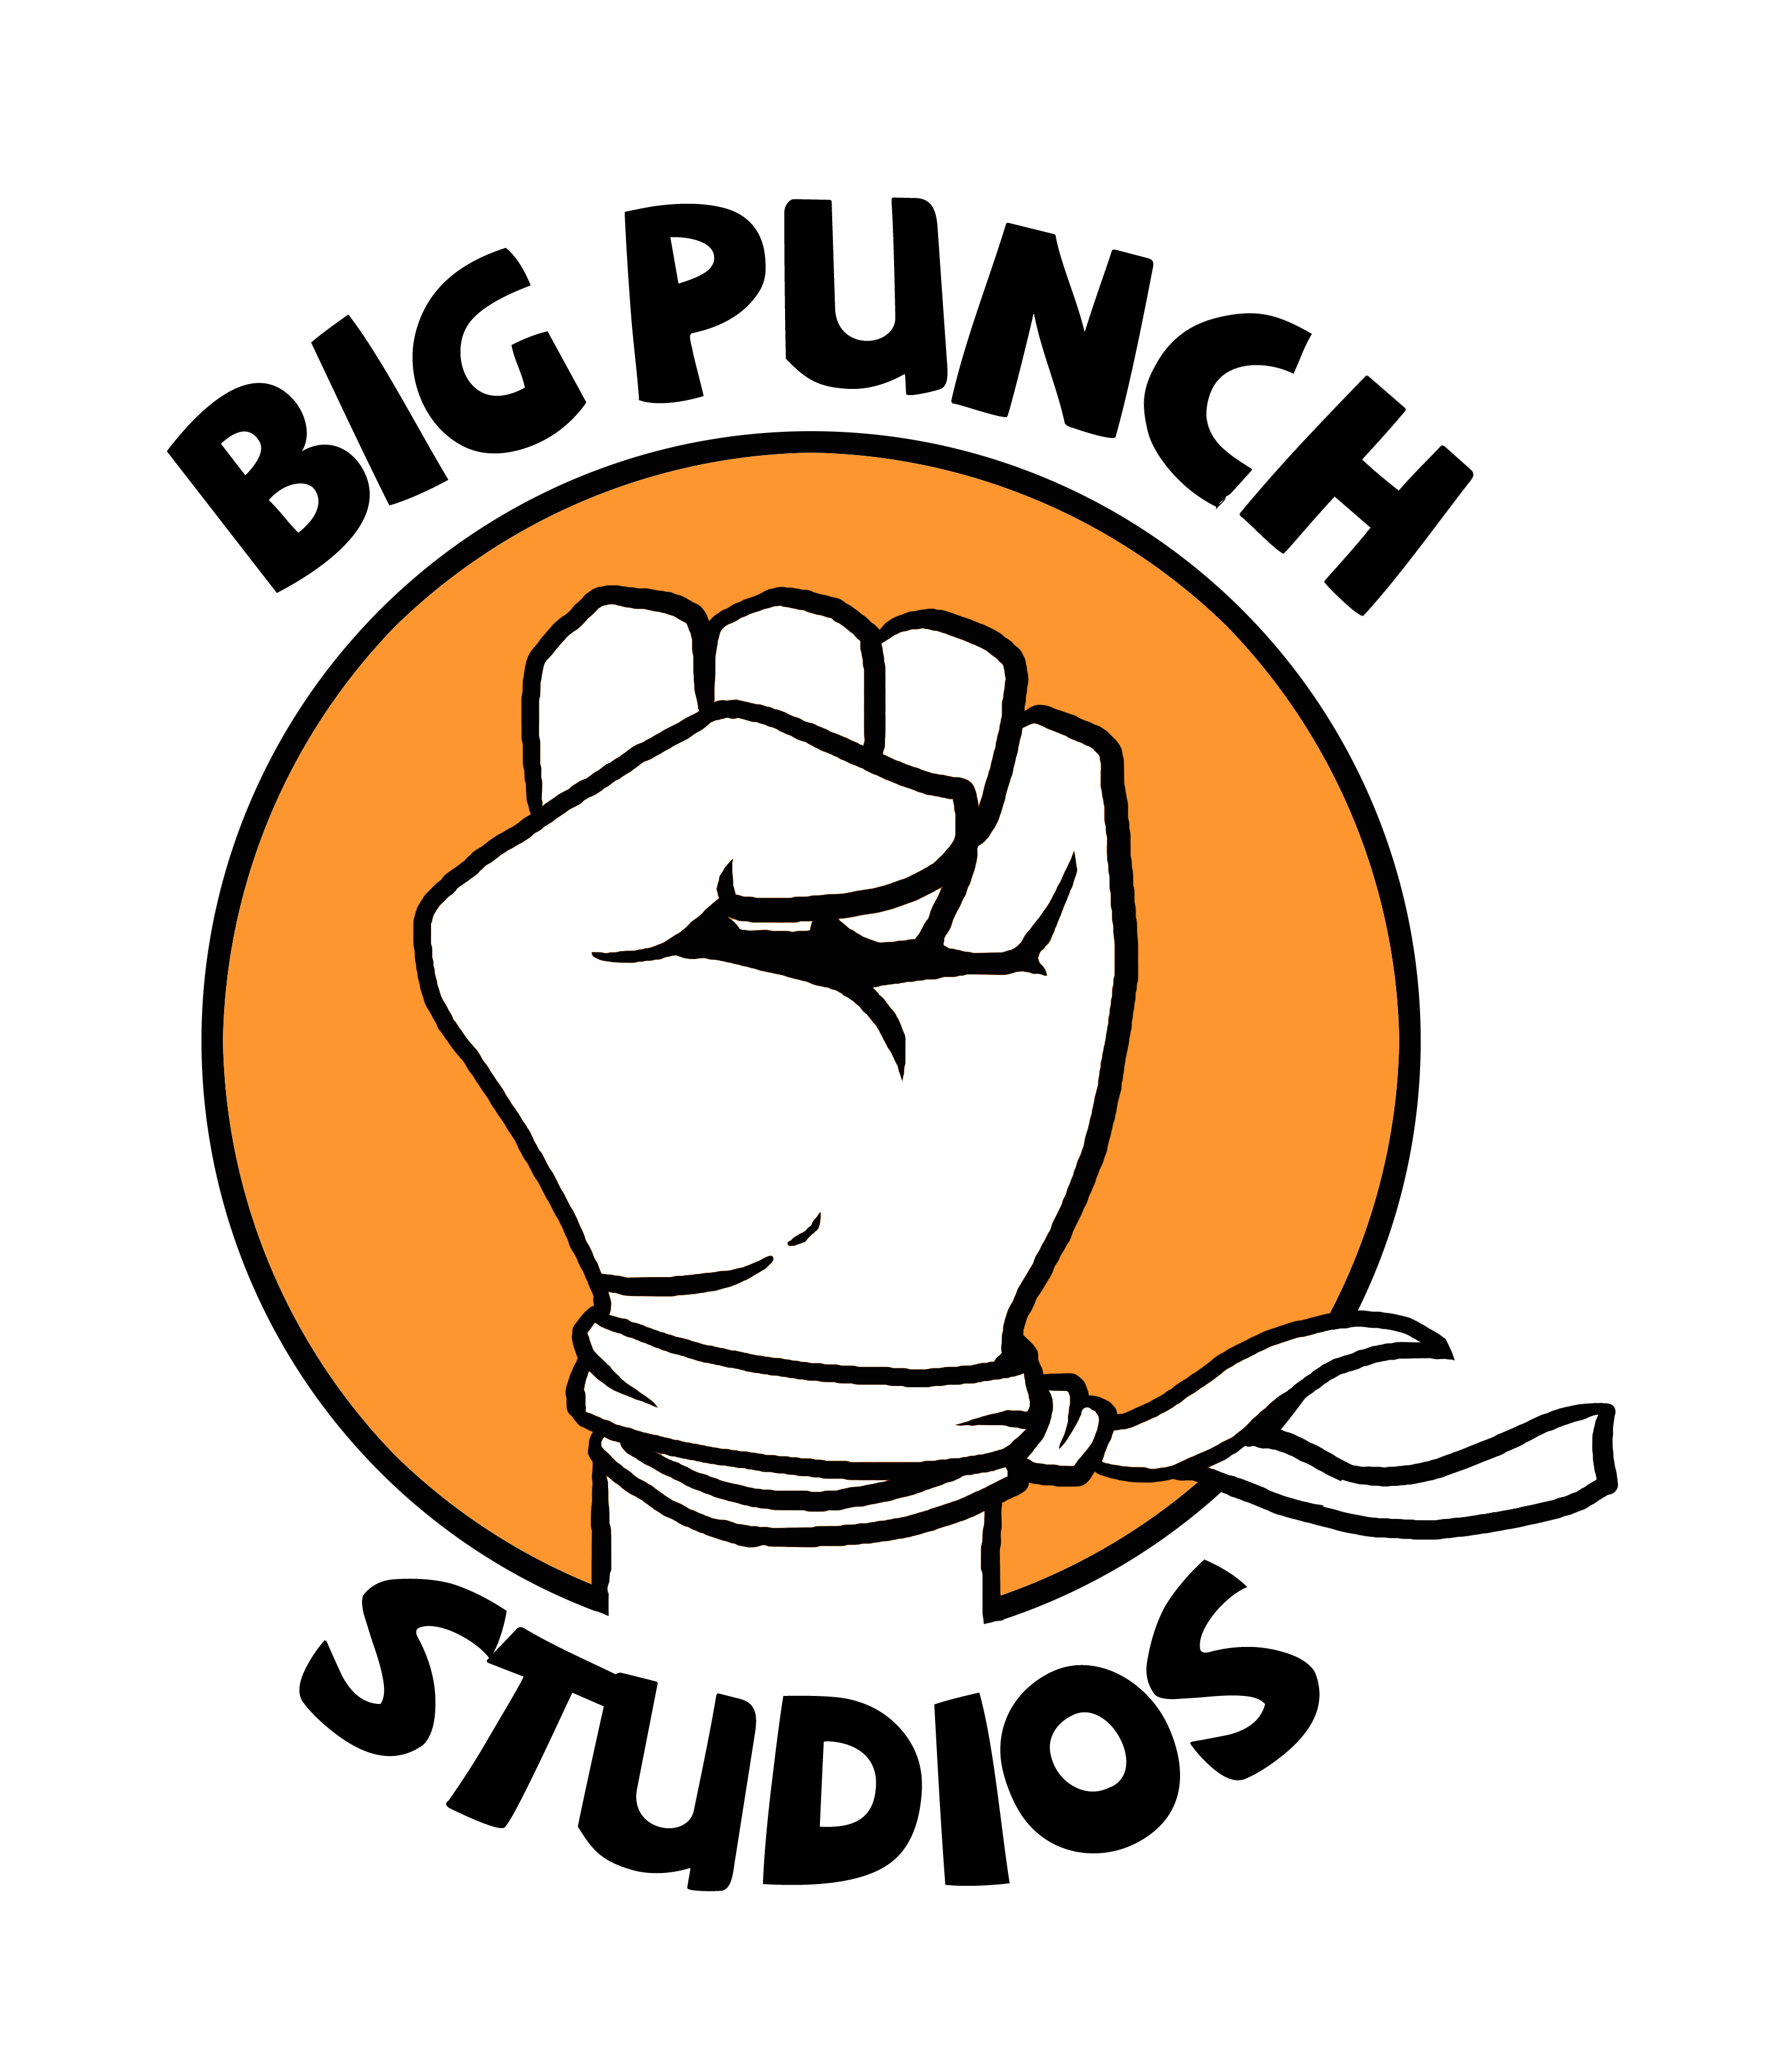 Big Punch Studios